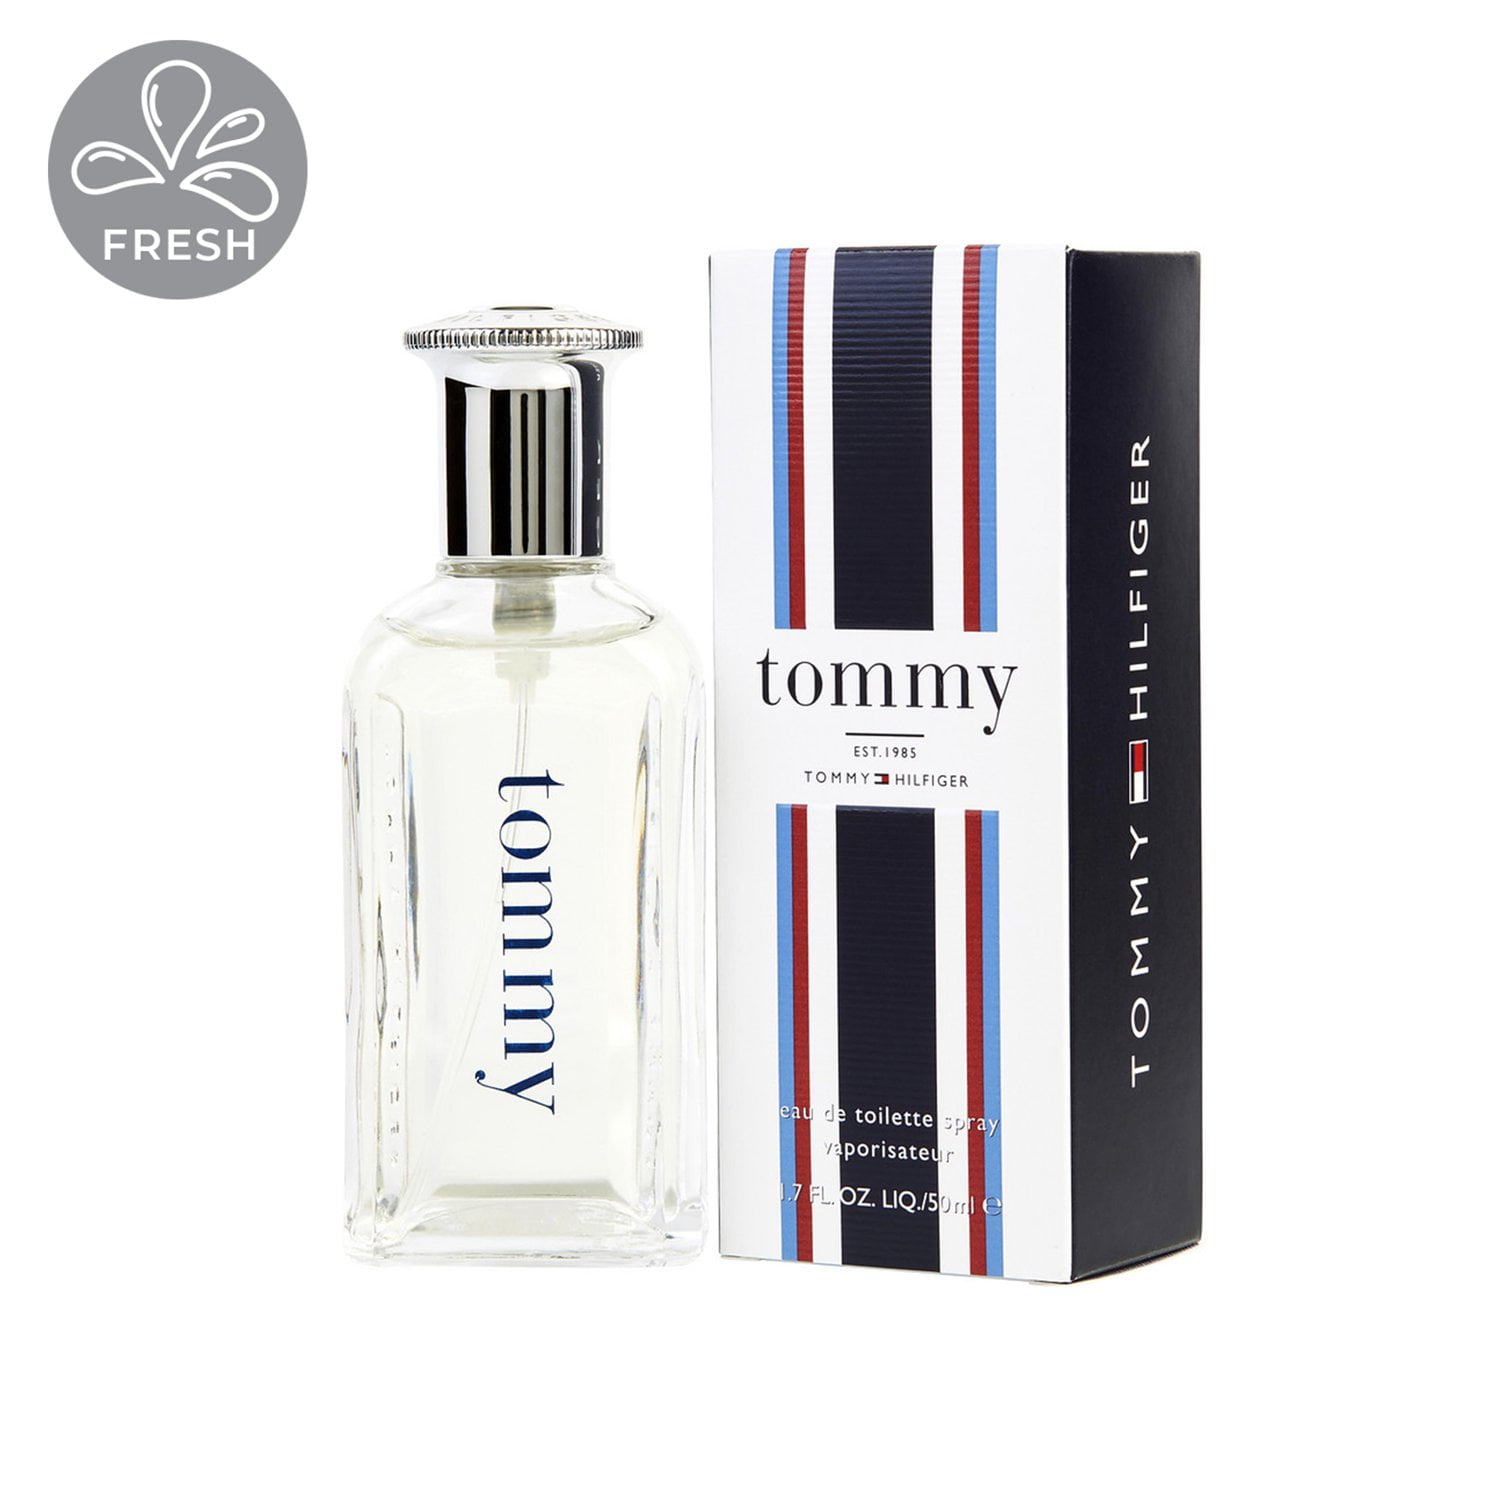 Tommy Hilfiger Eau De Toilette Spray, Cologne for Men, 1.7 oz Walmart.com